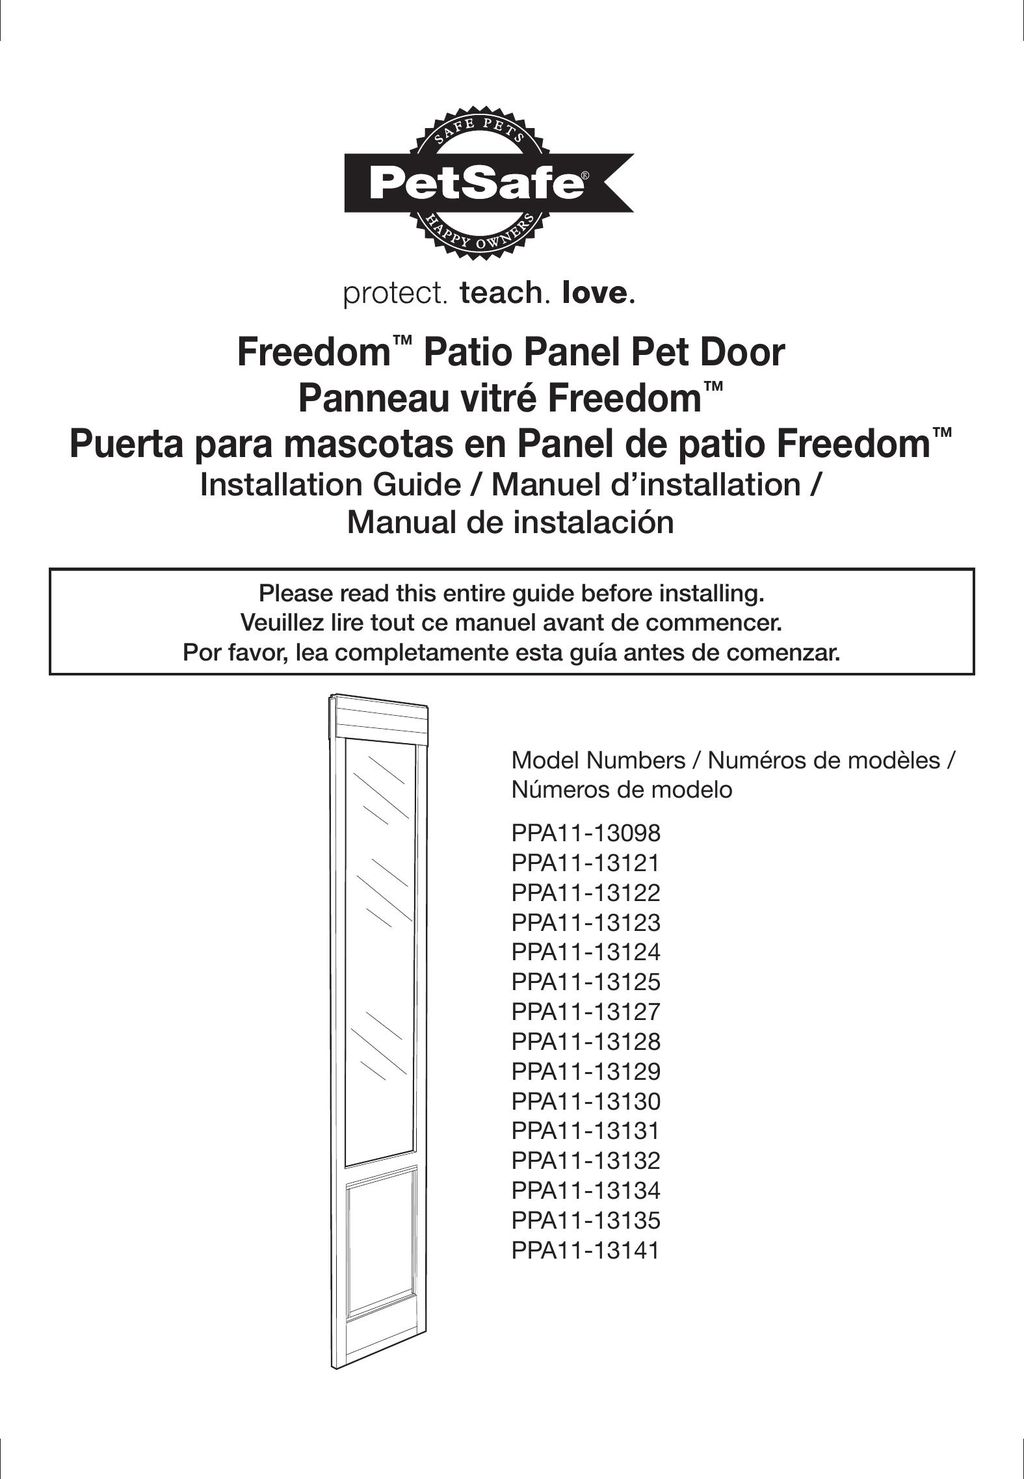 Petsafe PPA11-13121 Door User Manual